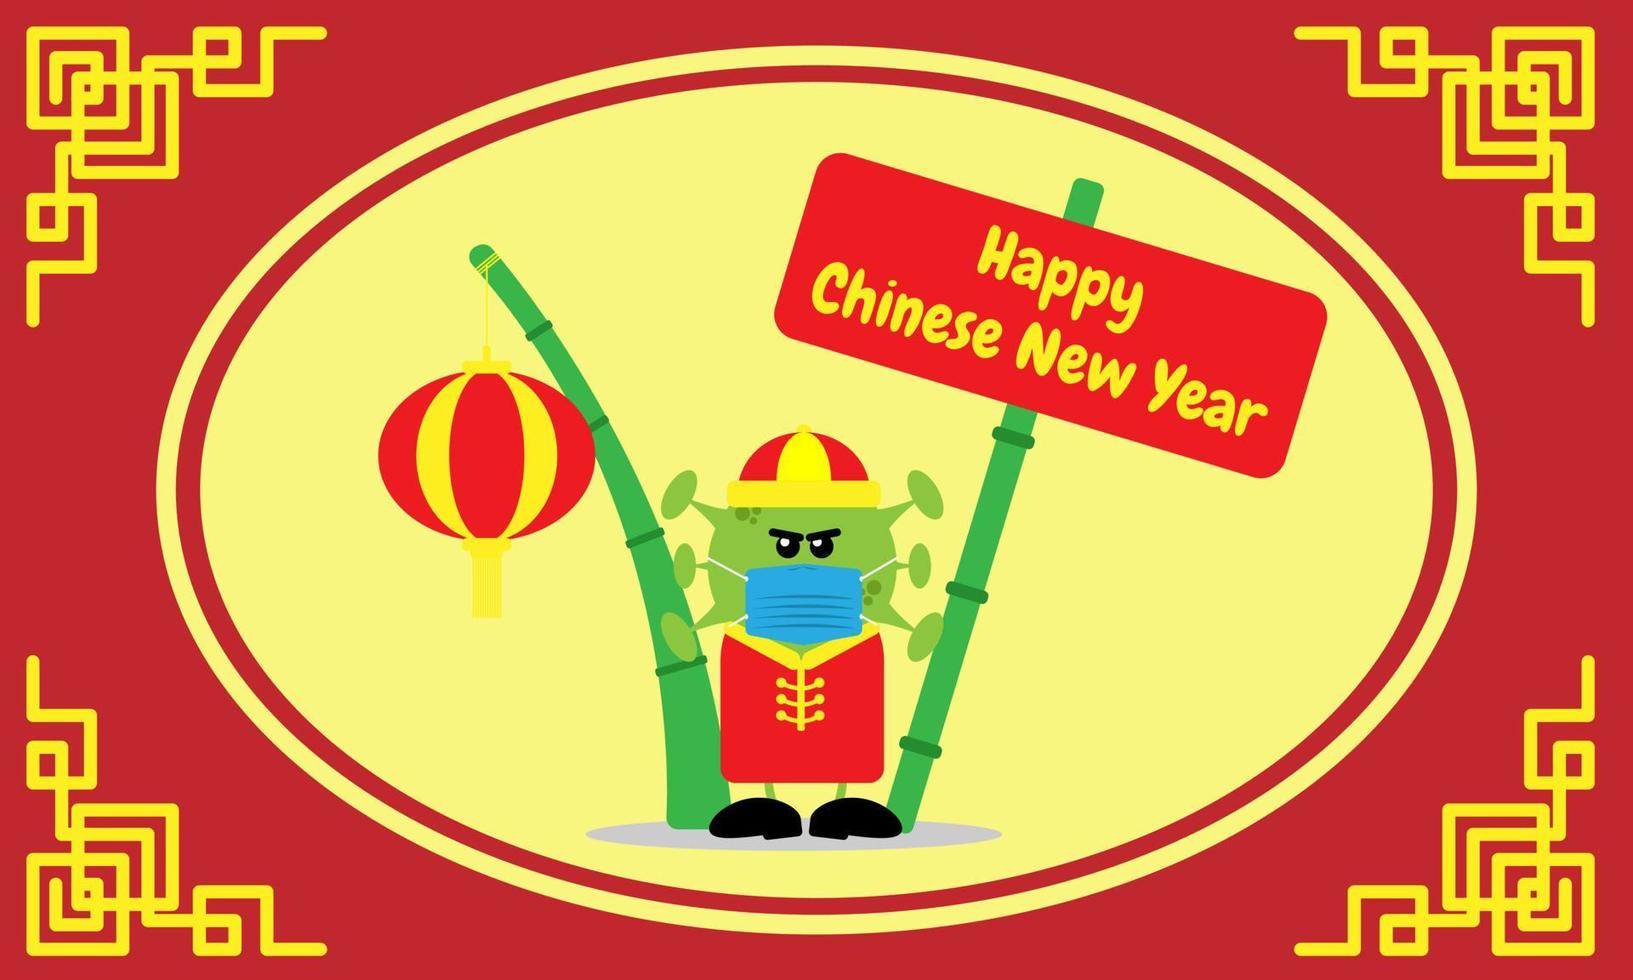 masked omicron virus wünscht Ihnen ein frohes chinesisches neues Jahr. geeignet für grußkarte, banner, cover, etc vektor